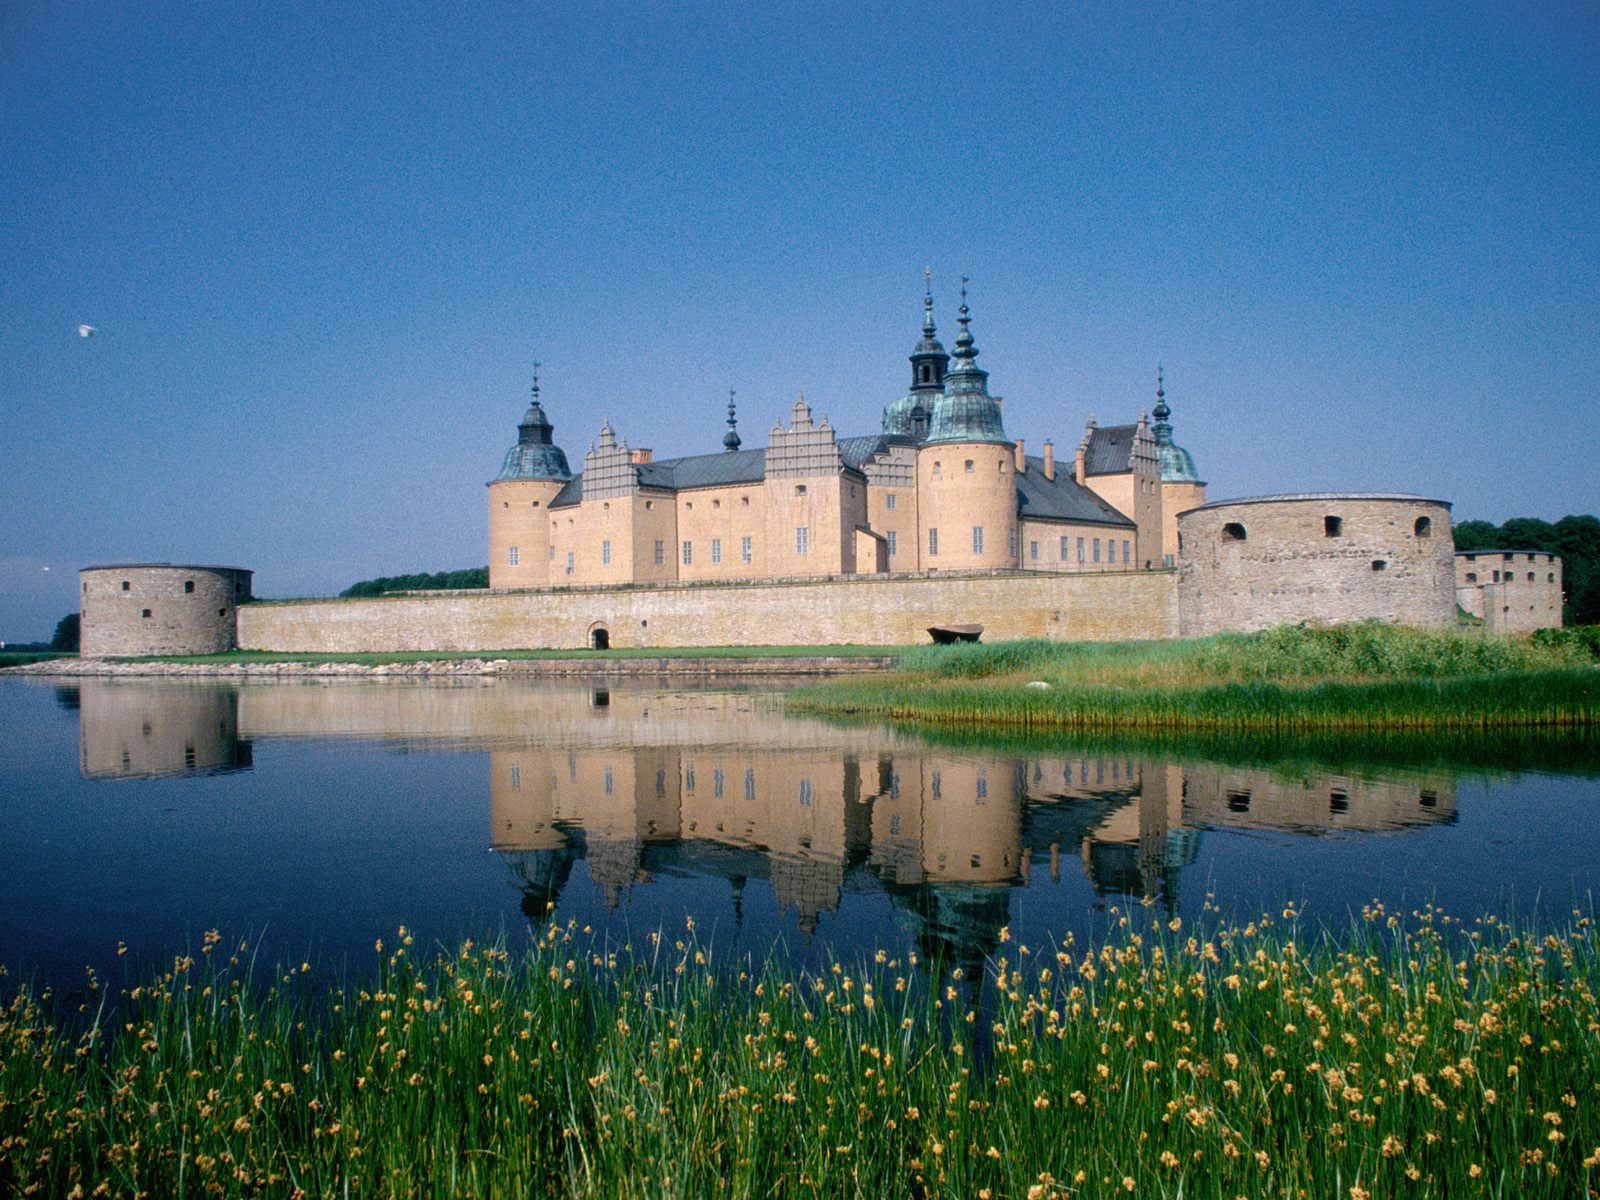 http://3.bp.blogspot.com/-CNDYVrRwXoA/TdiMk9duXMI/AAAAAAAADGU/8sedyE5lQ1o/s1600/Kalmar+Castle%252C+Kalmar%252C+Sweden.jpg